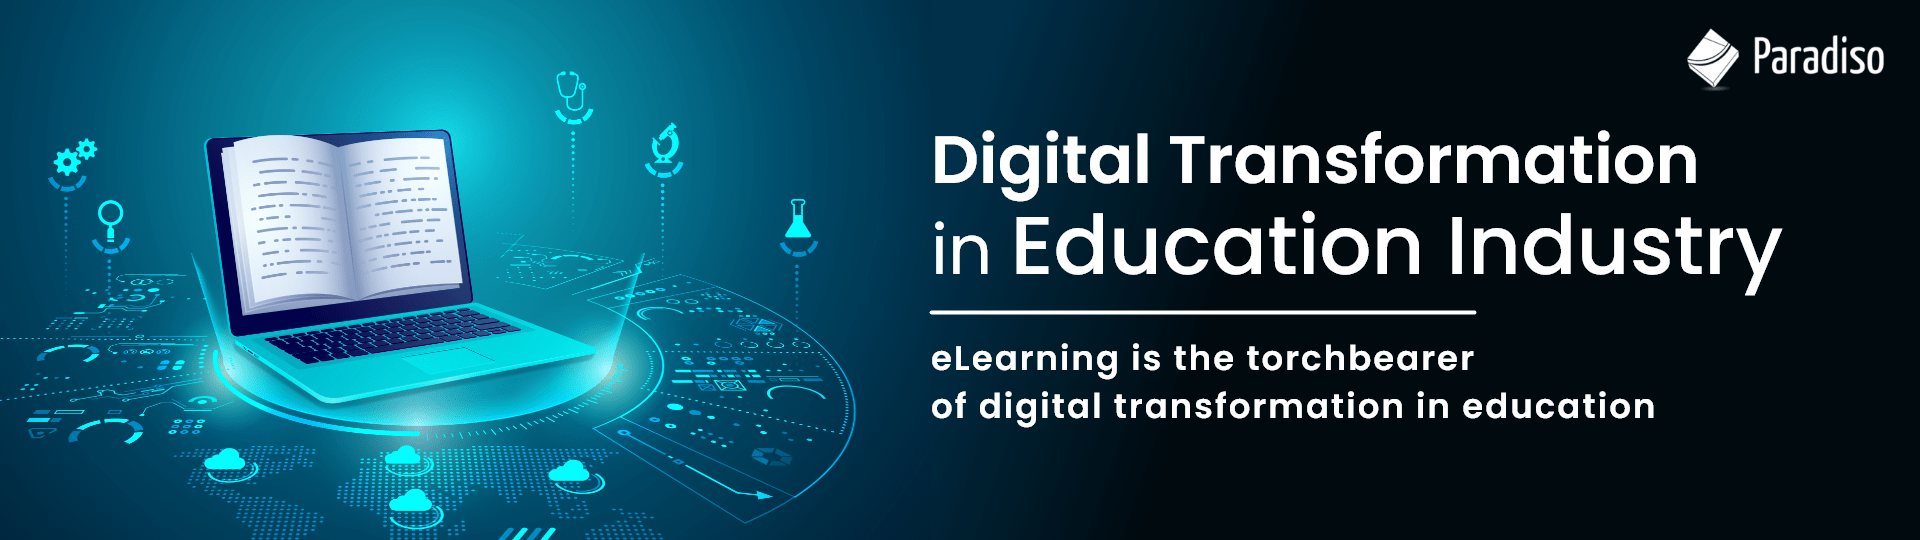 Digital Transformation in Education Industry